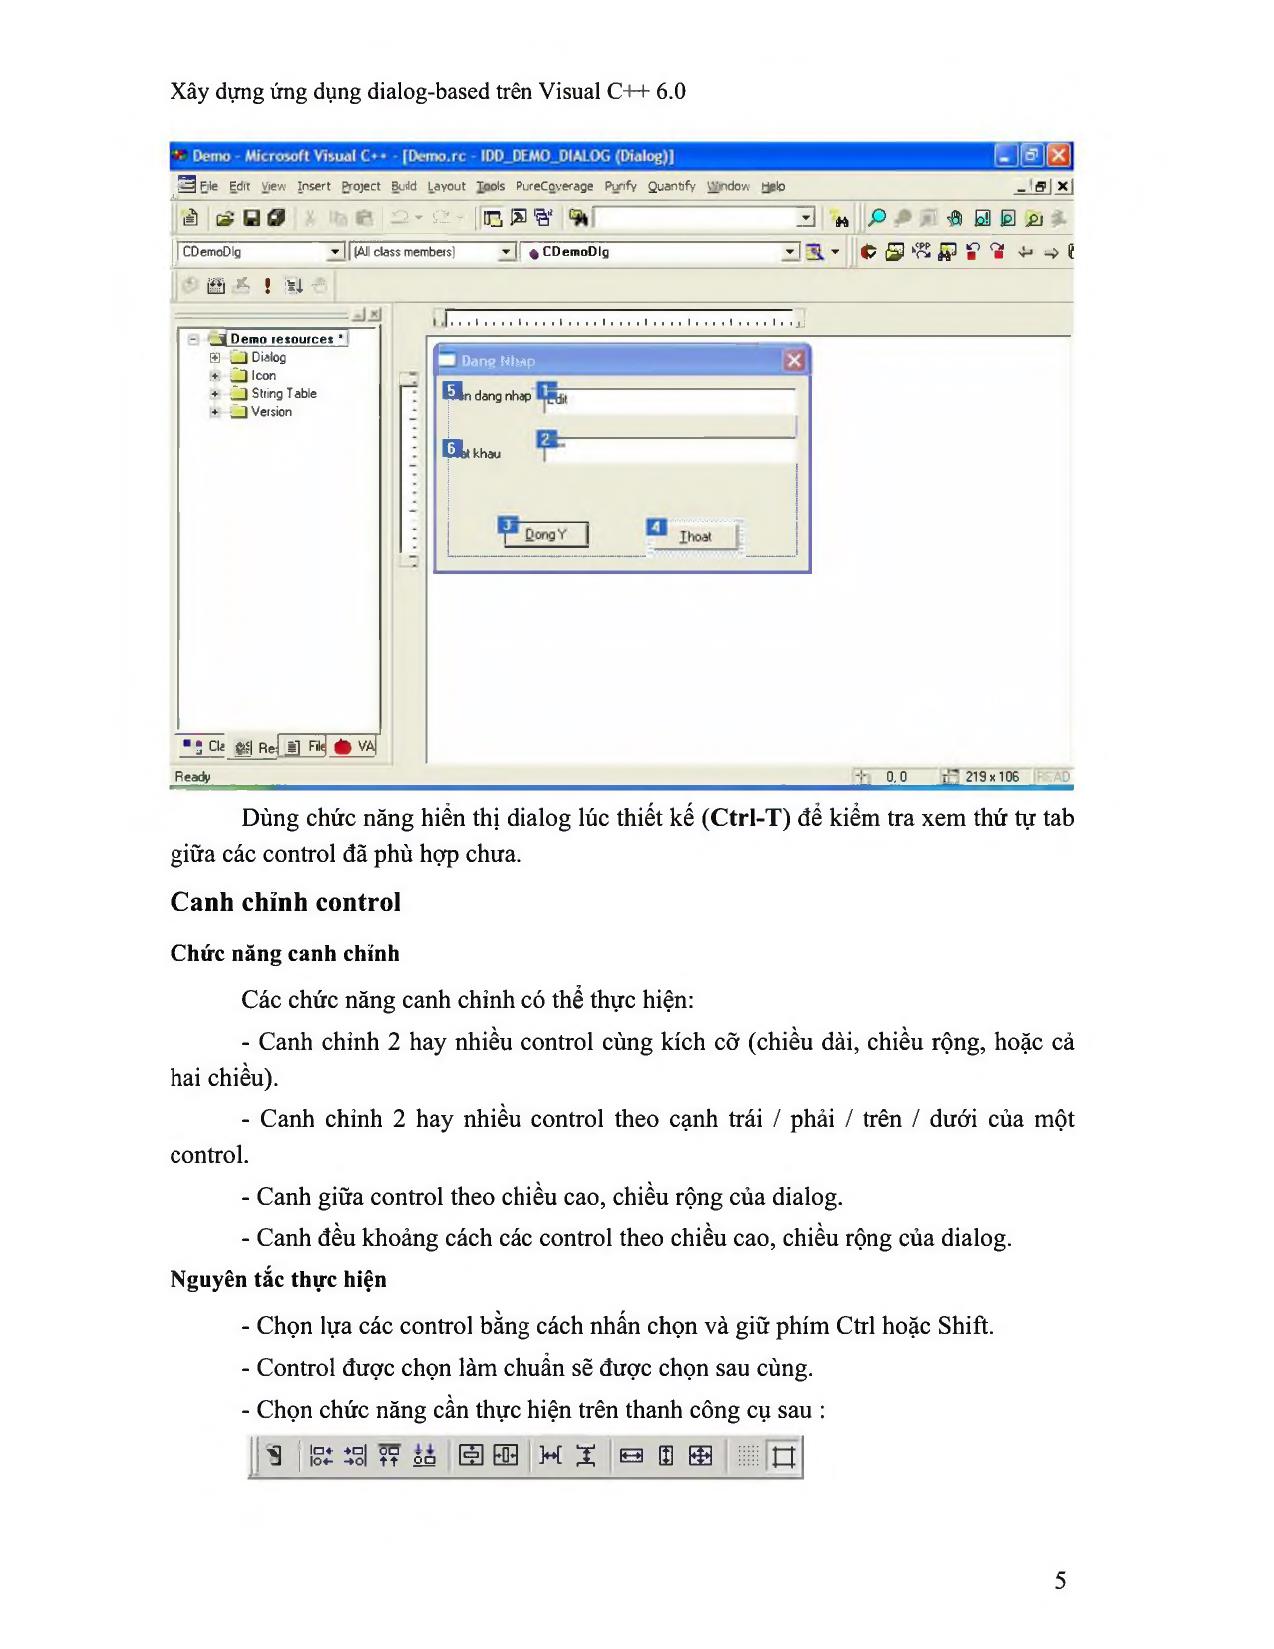 Xây dựng ứng dụng dialog-Based trên Visual C++ 6.0 trang 5